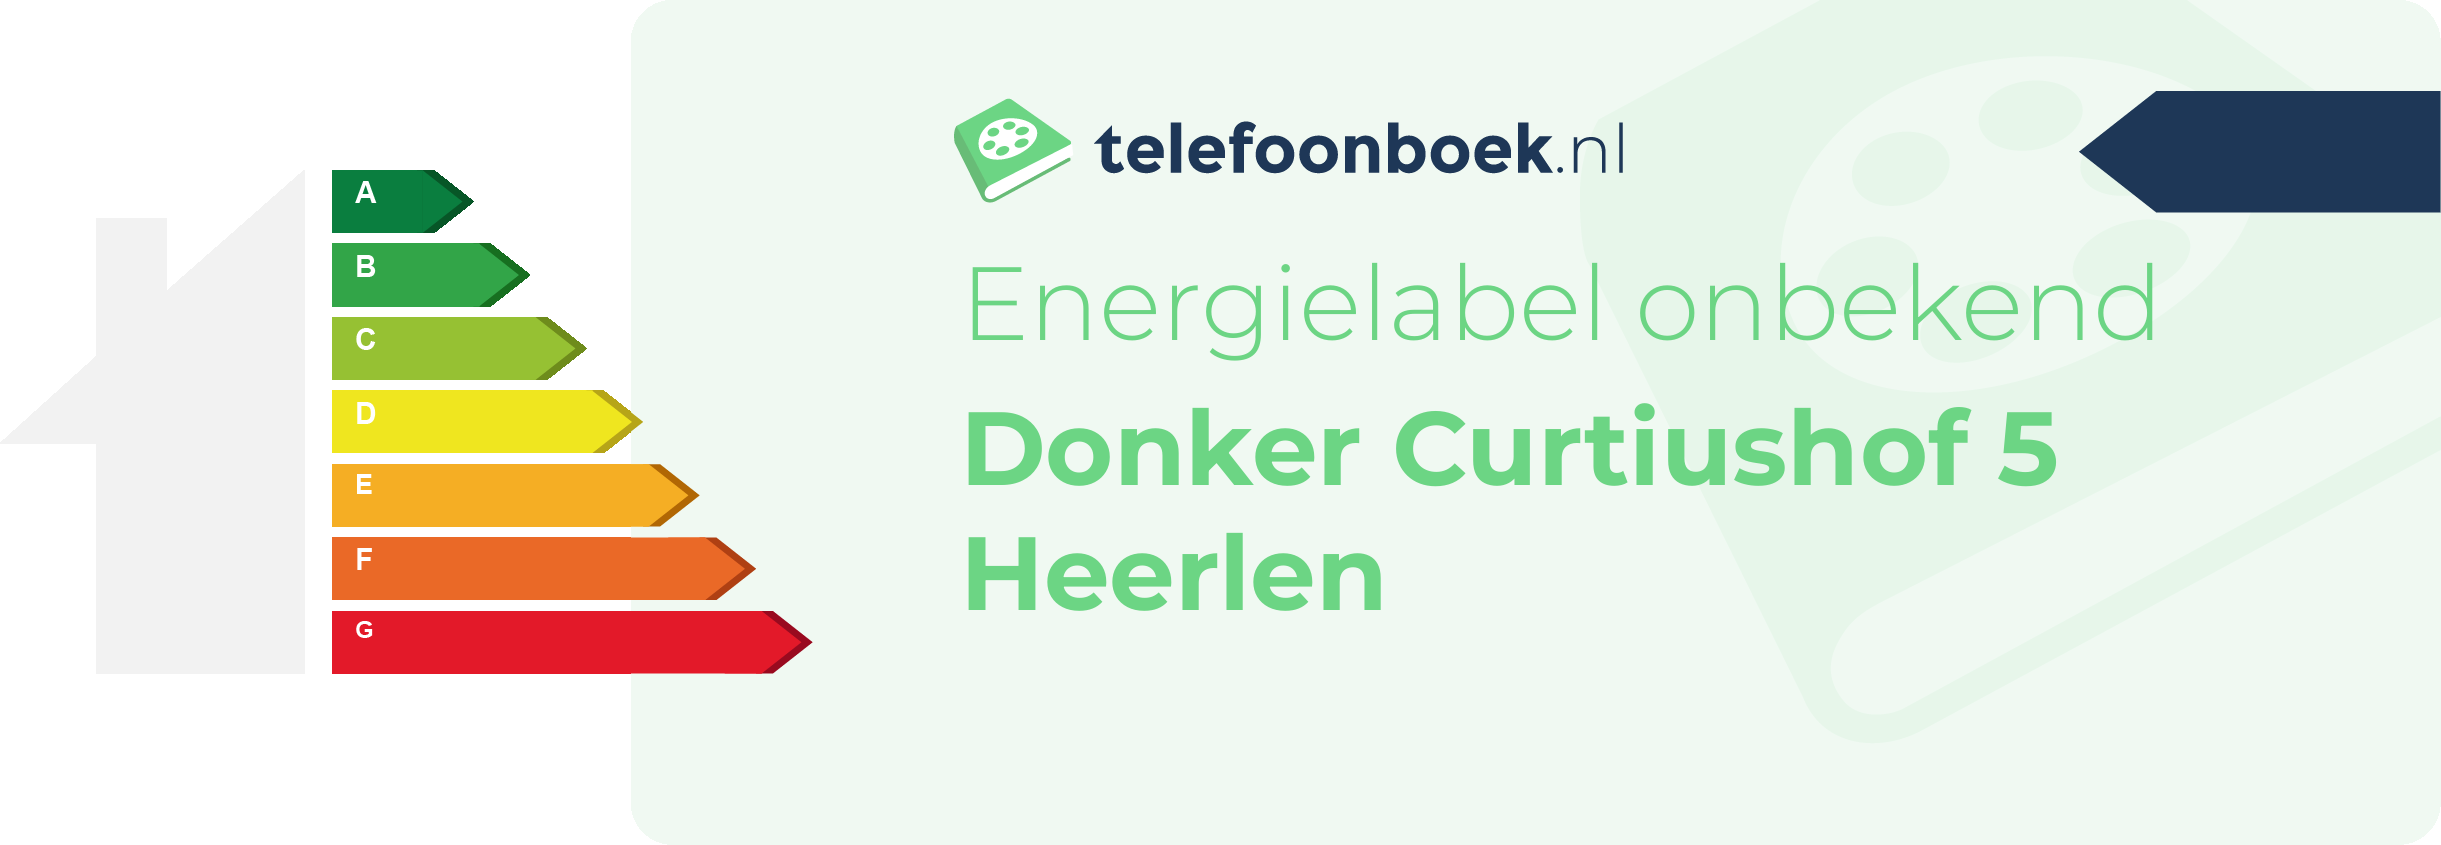 Energielabel Donker Curtiushof 5 Heerlen